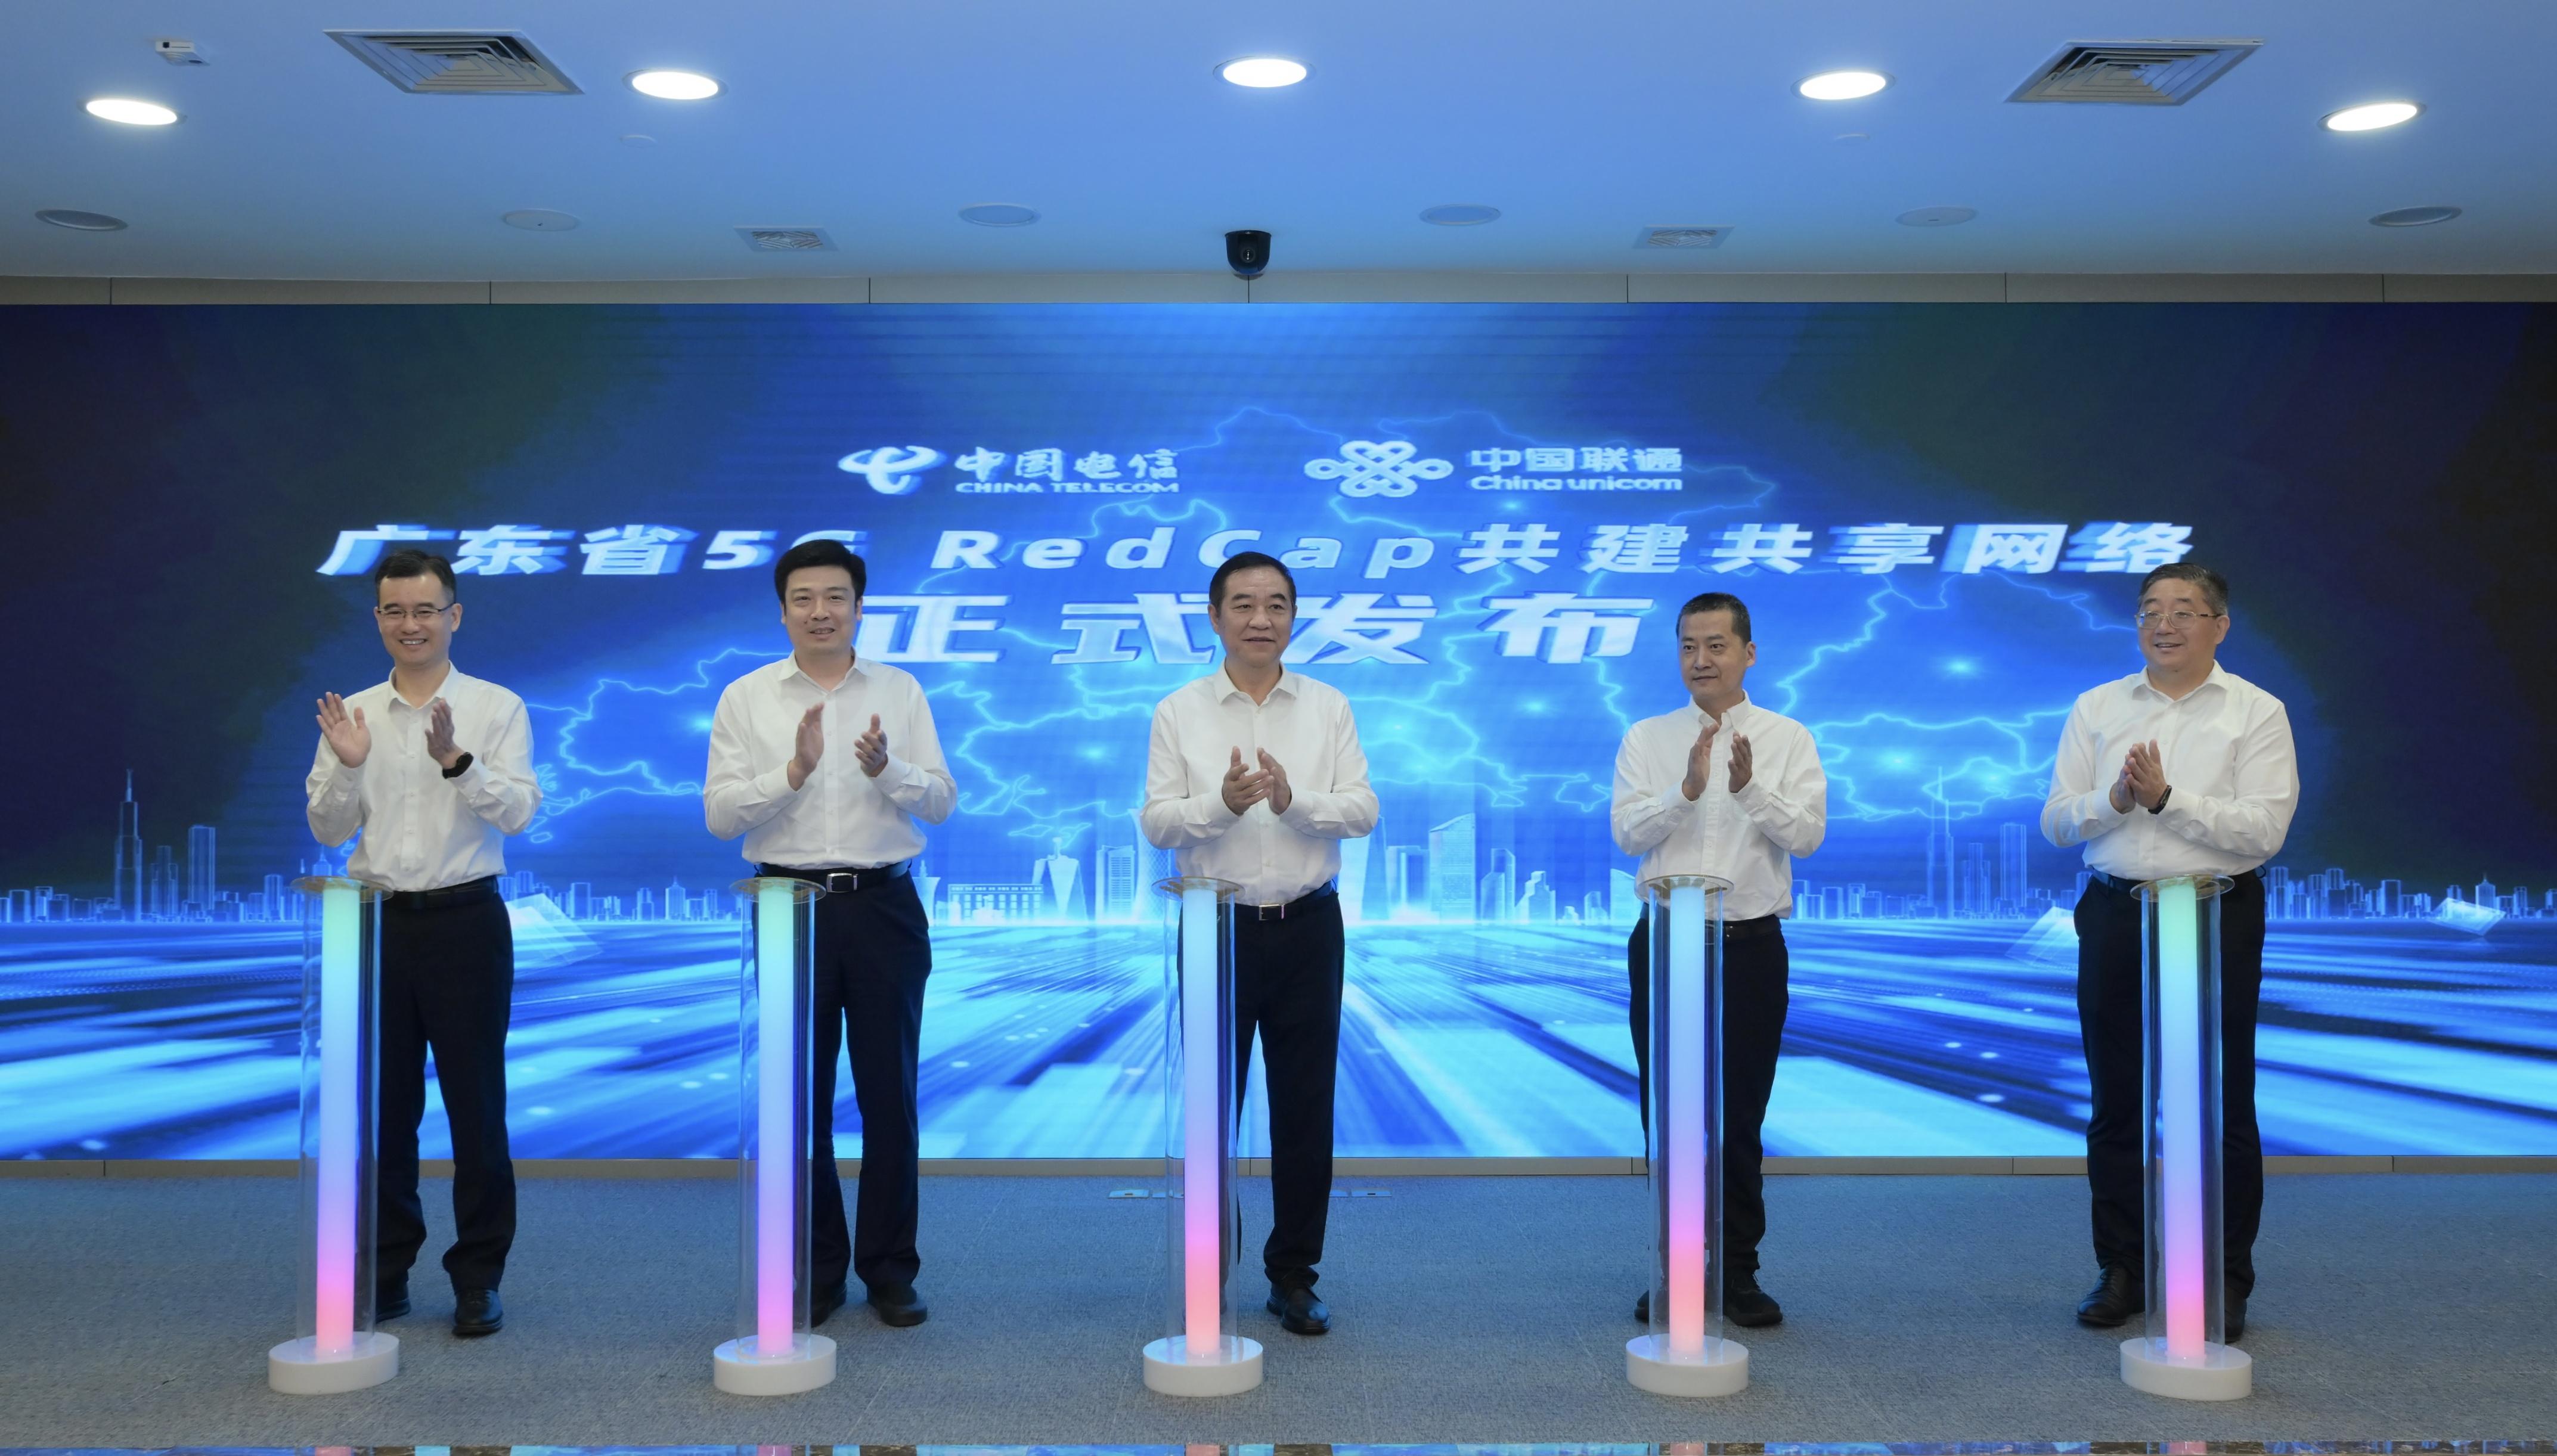 重庆联通 5G 网络全覆盖，引领未来生活新潮流  第5张